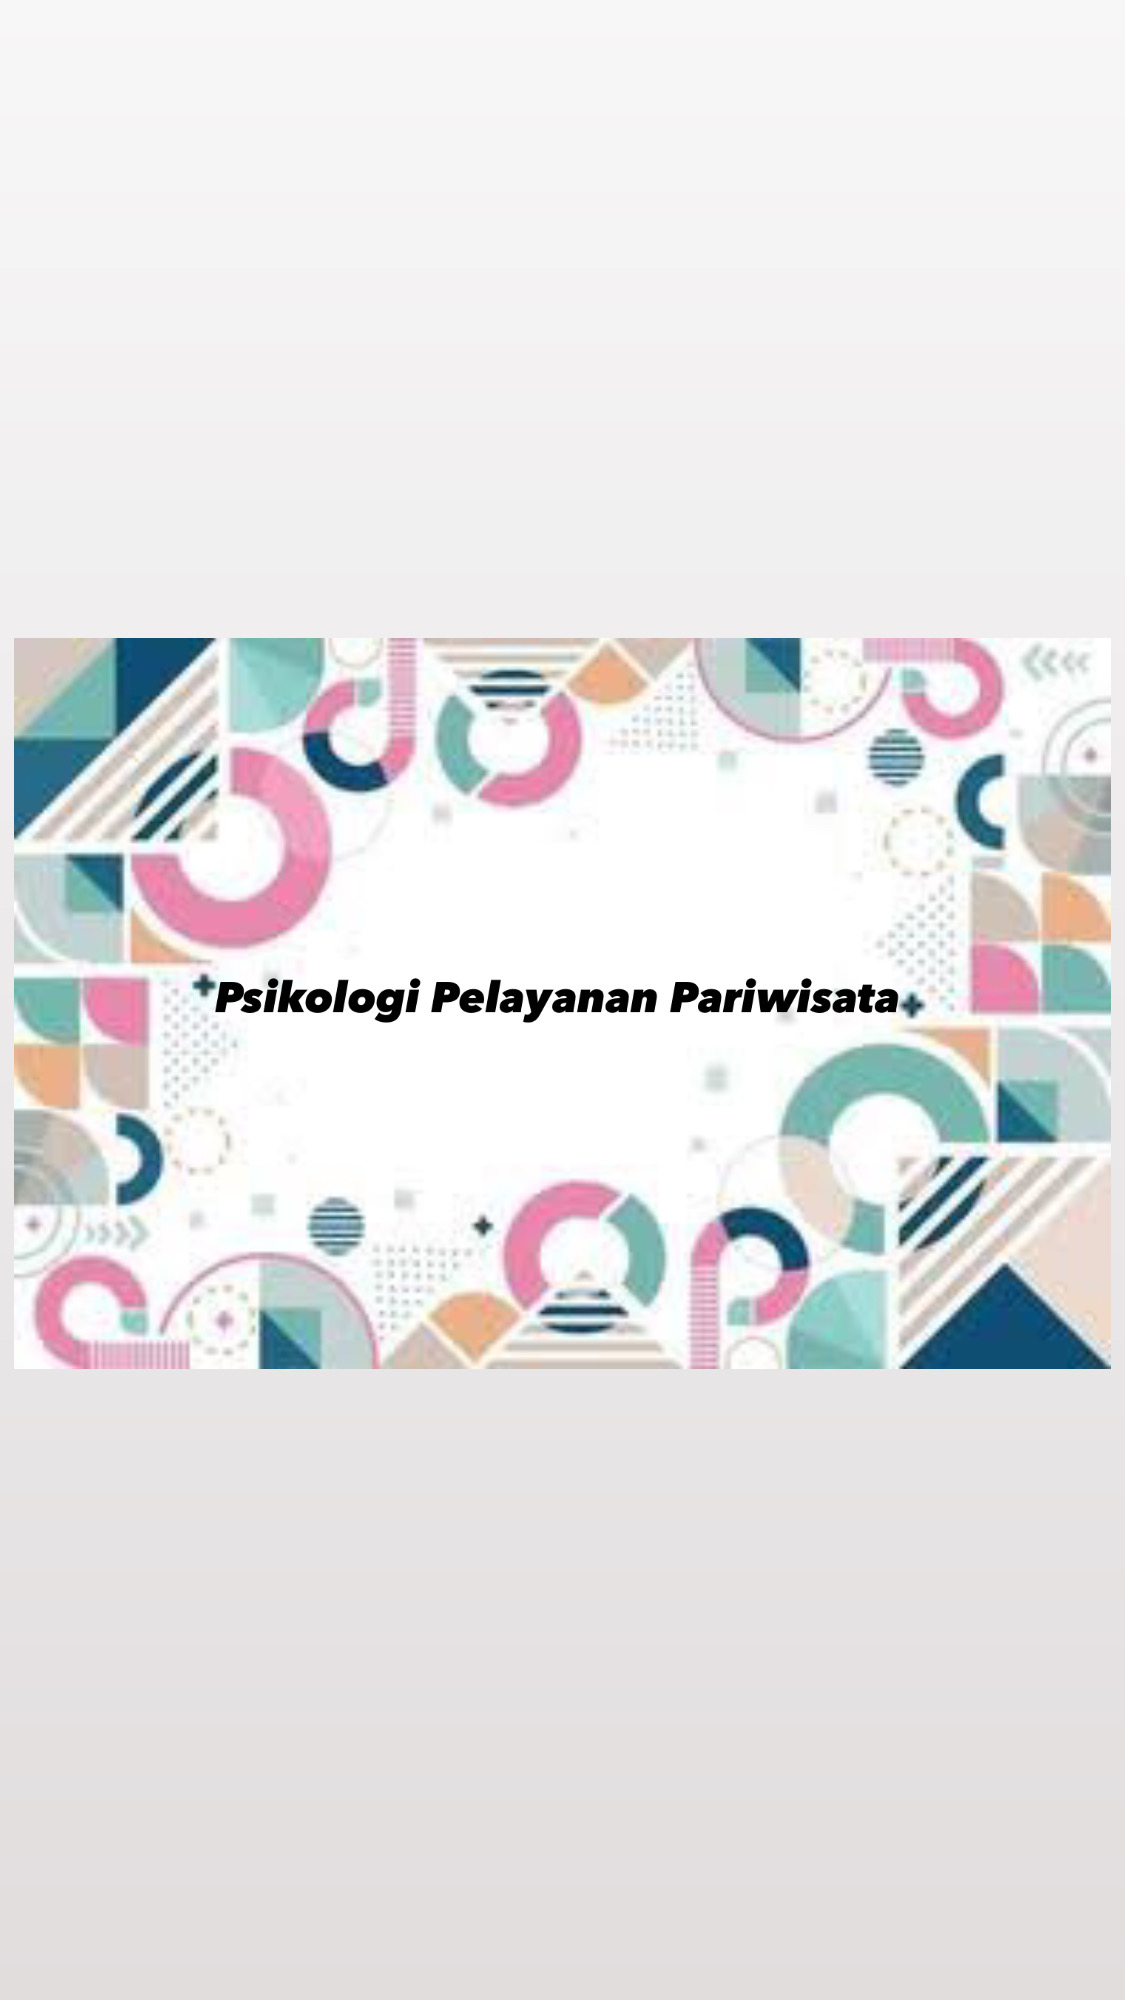 Psikologi Pariwisata & Pelayanan_A_SMT 3_20211